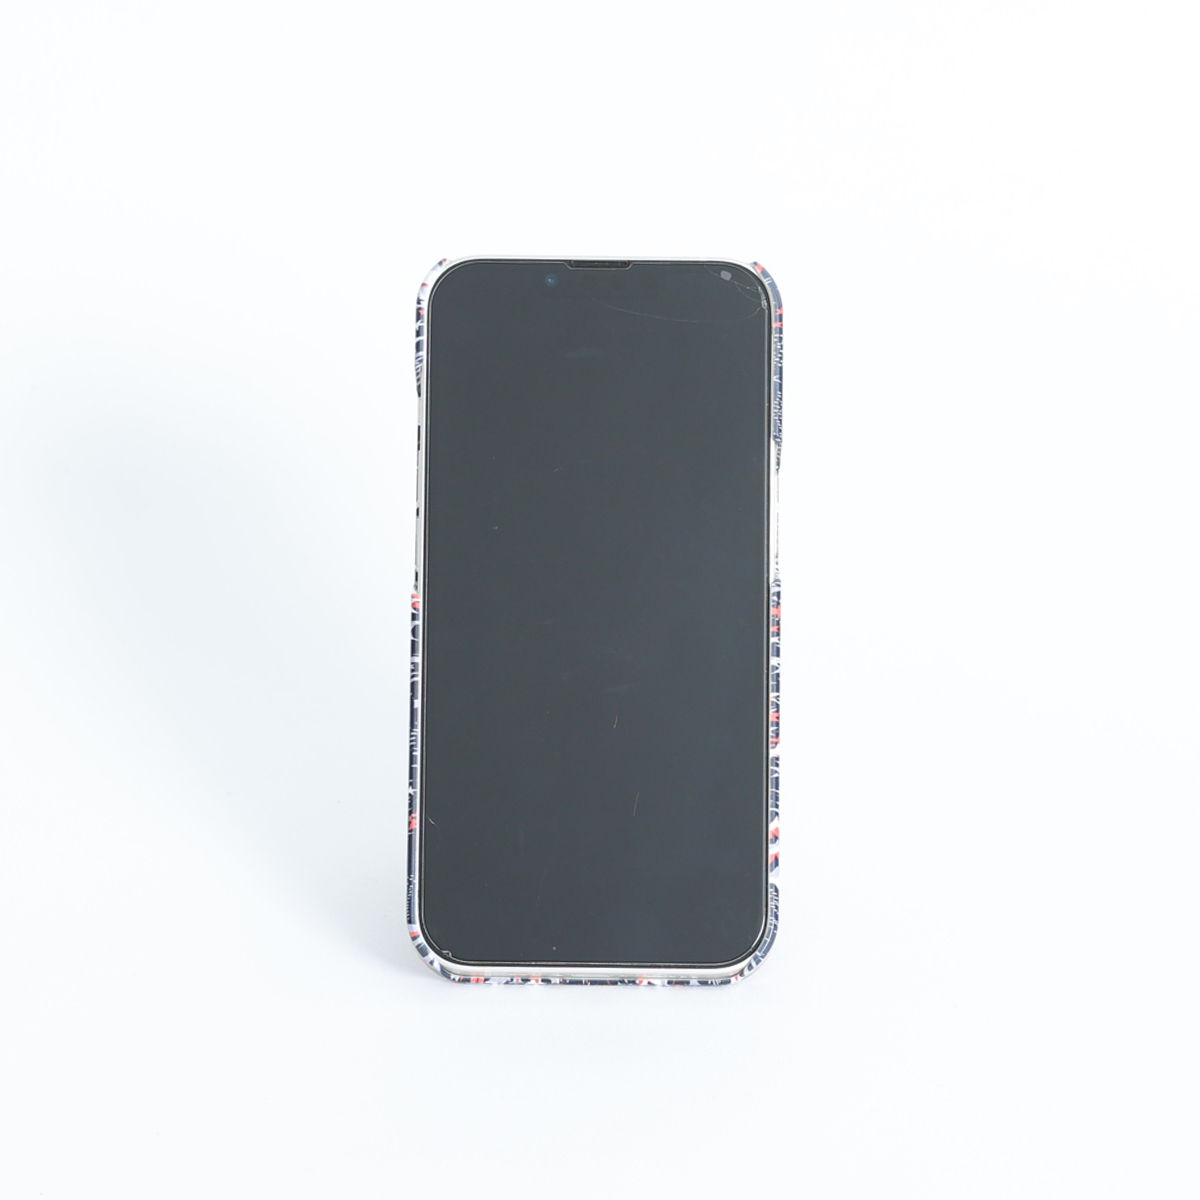 11月下旬お届け予定ご受注商品『Have a nice day BLACK』 Android hard case画像